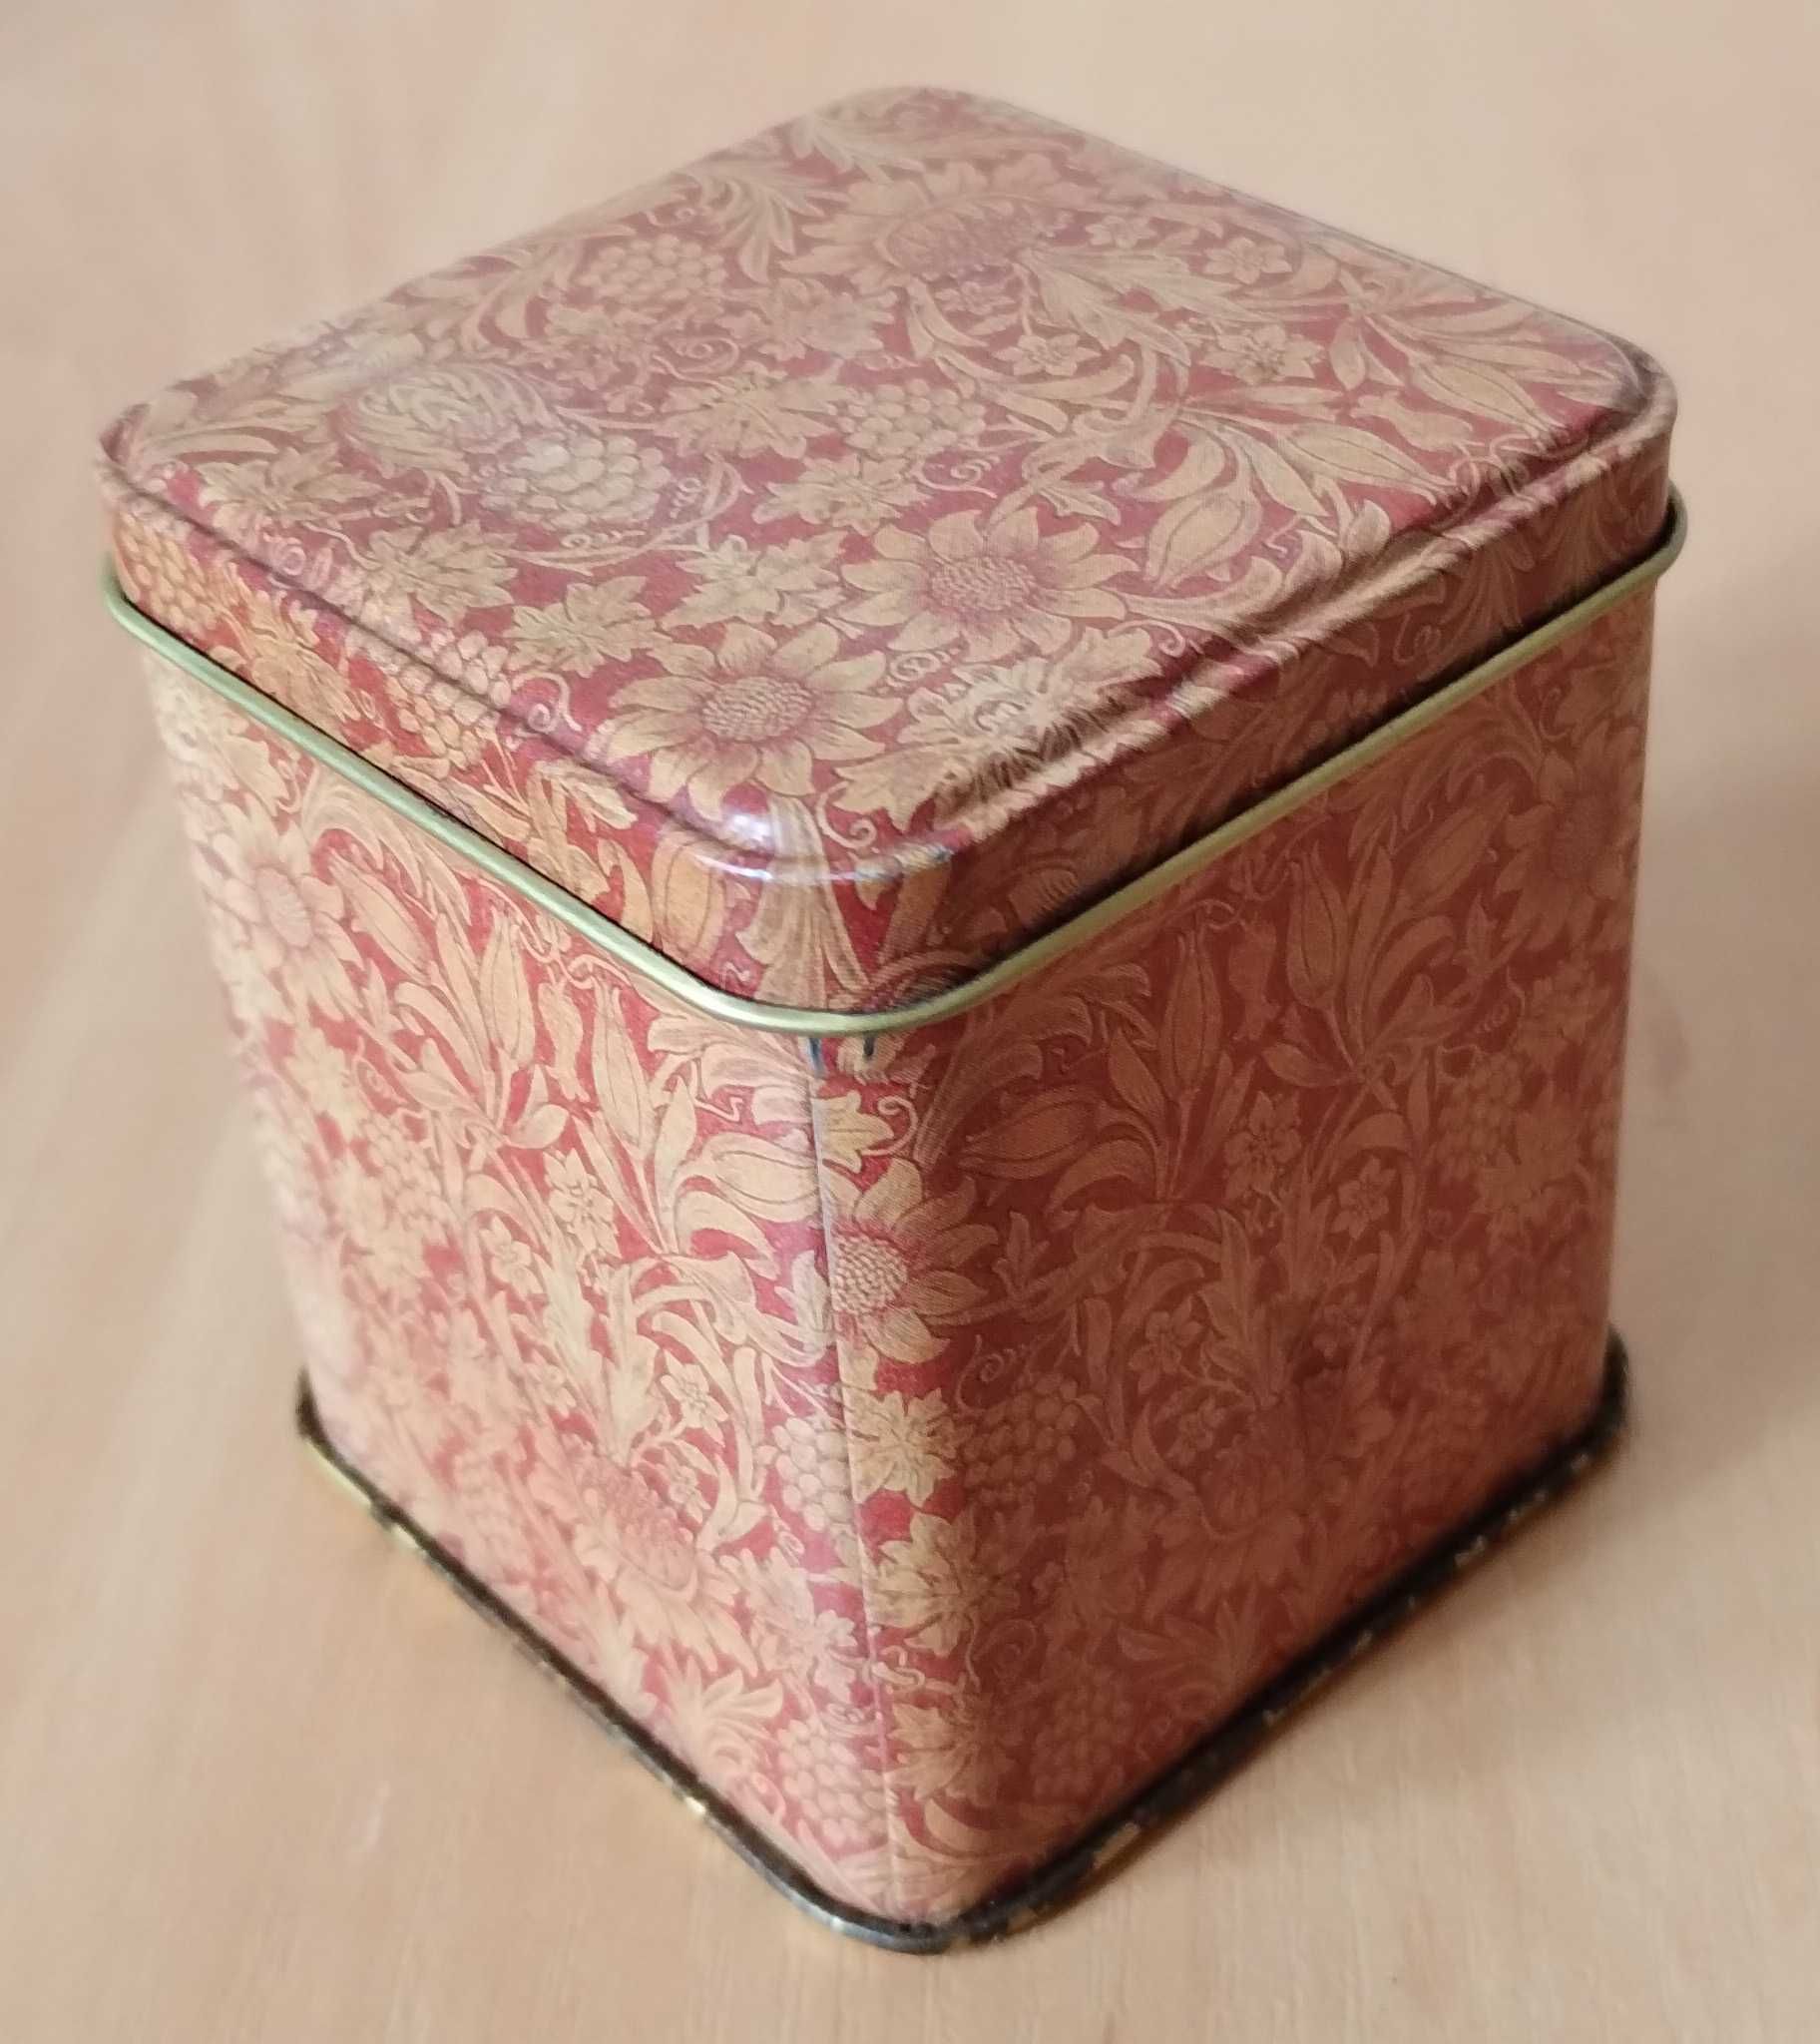 Жестяная коробка от чая MlesnA. Tea box 100g.